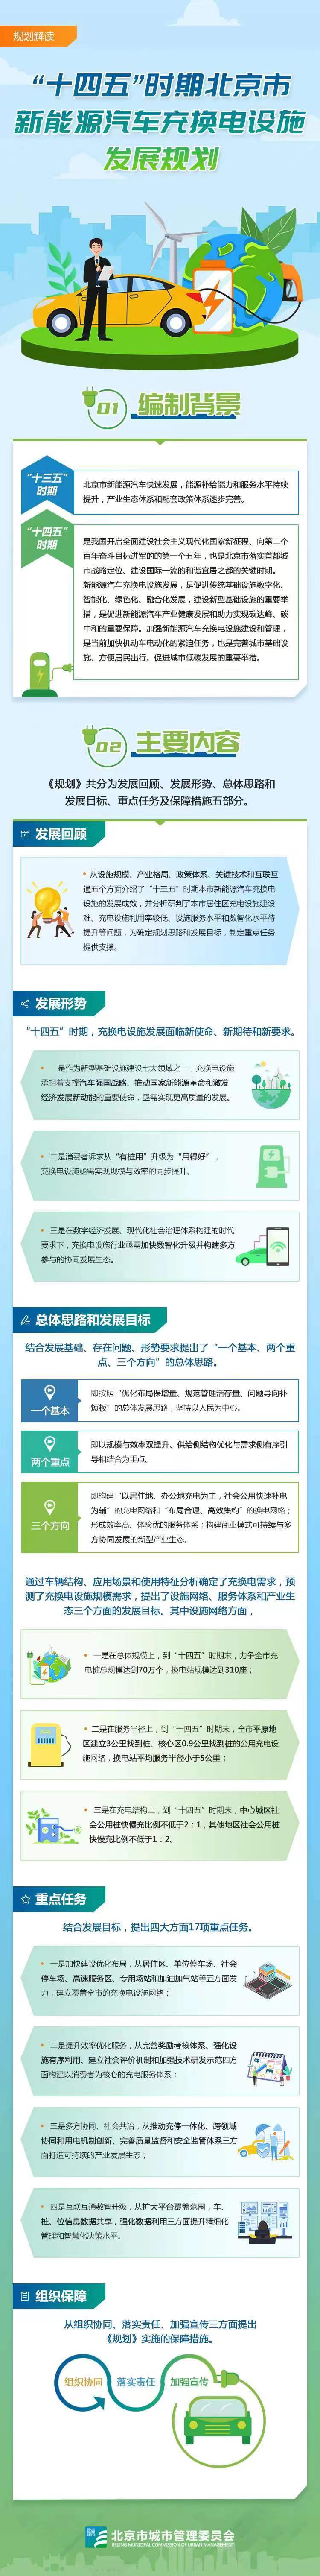 圖解《關於“十四五”時期北京市新能源汽車充換電設施發展規劃》